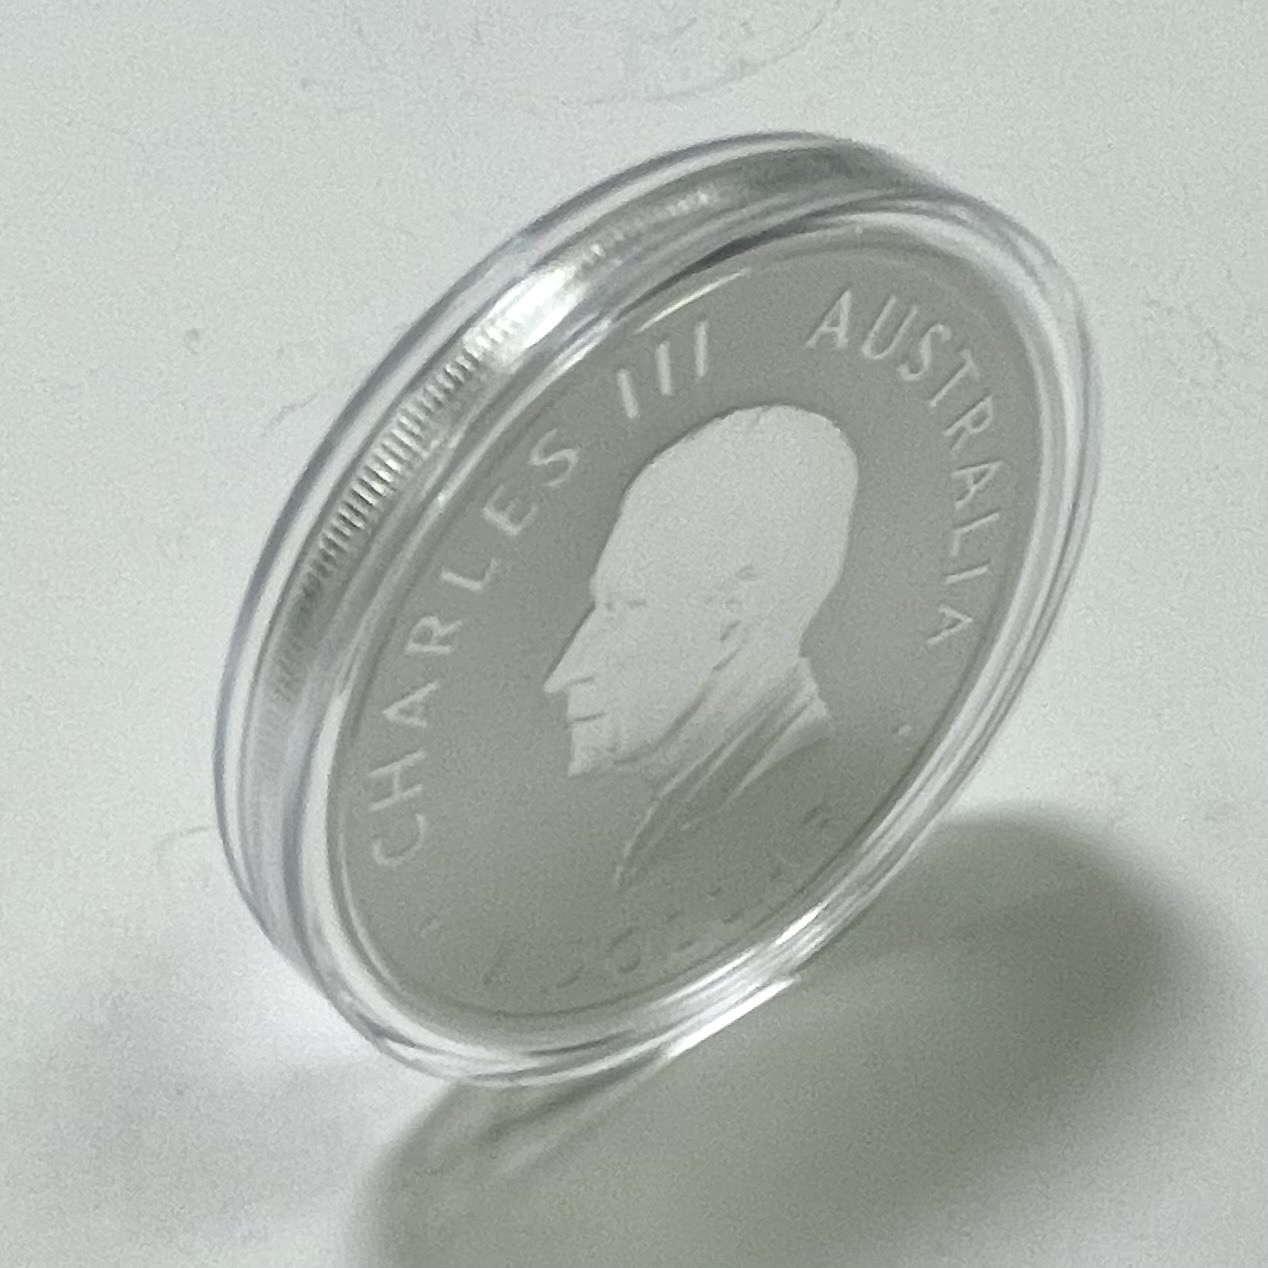 2023 オーストリア パース造幣局125周年記念1オンス純銀貨